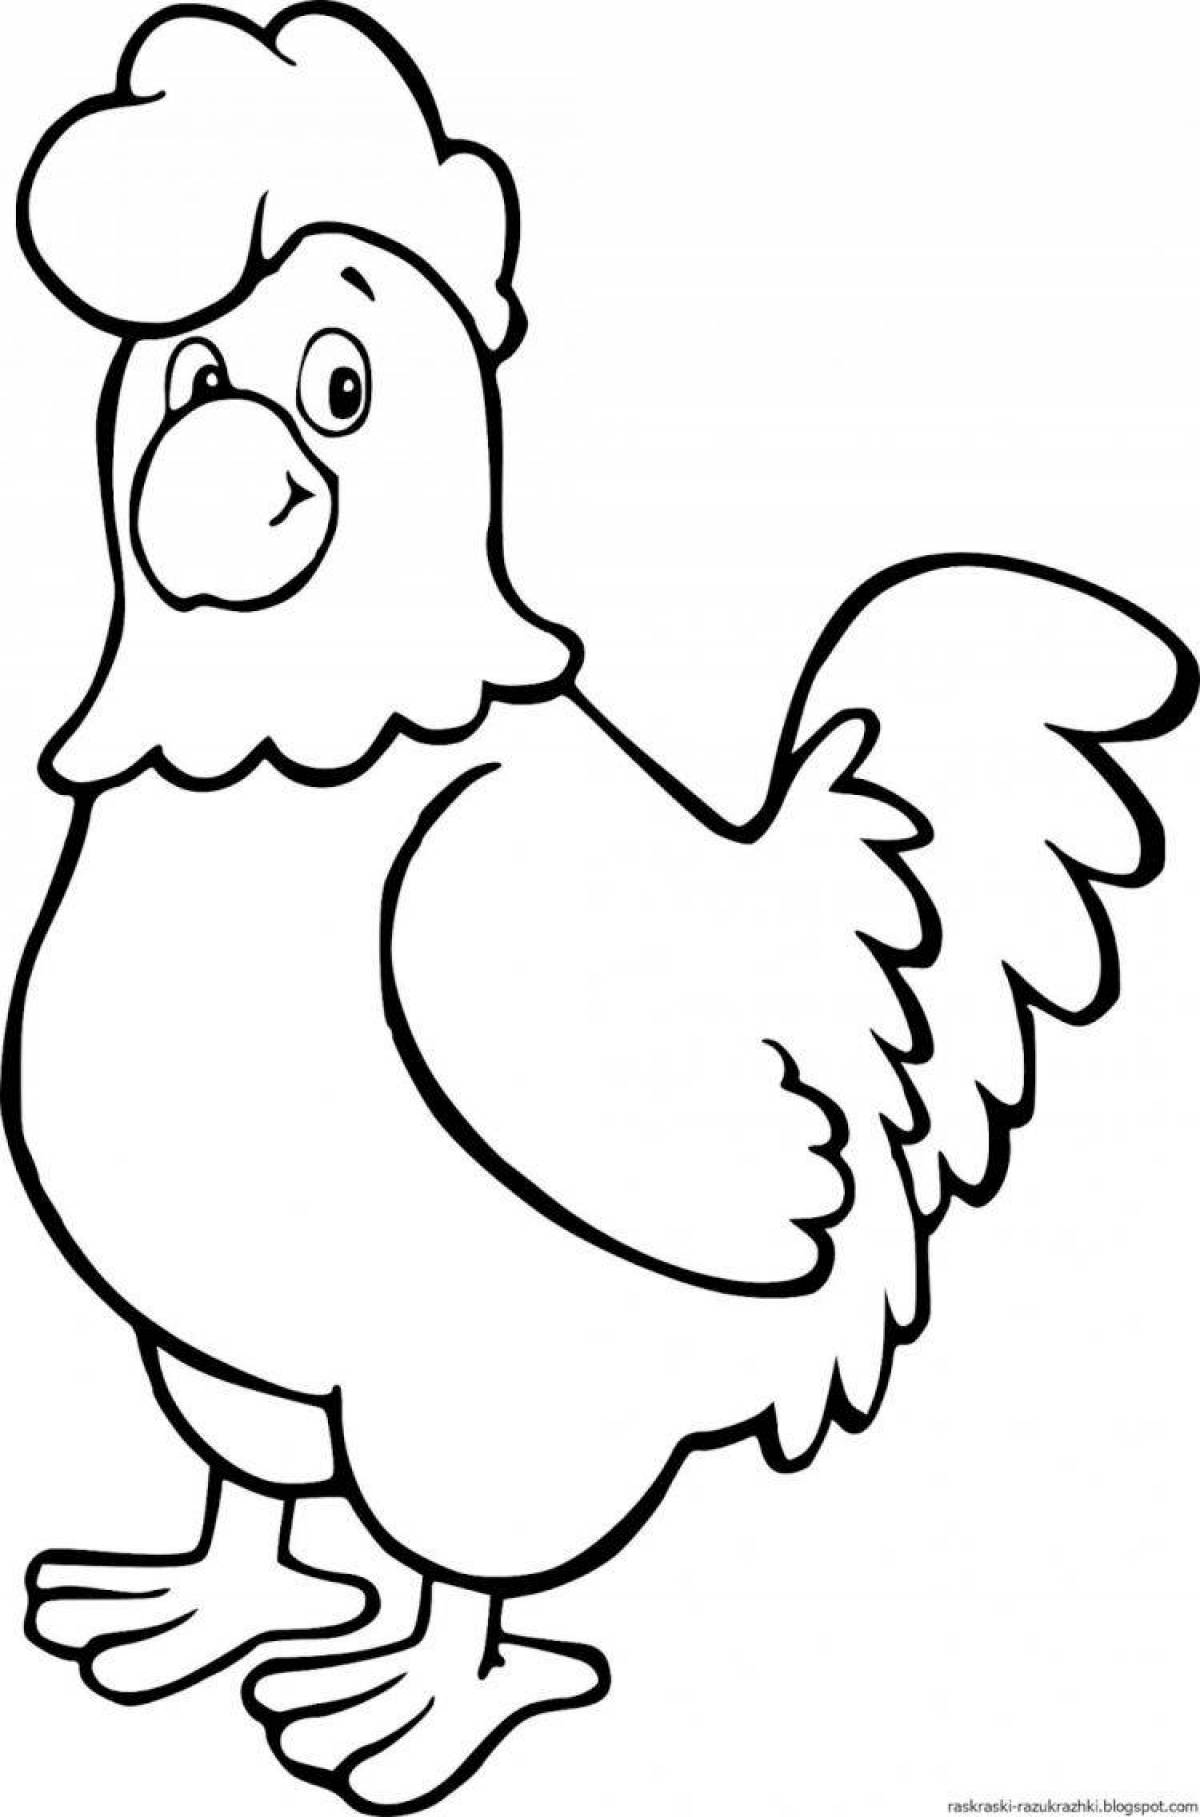 Раскраска курица с цветными брызгами для детей